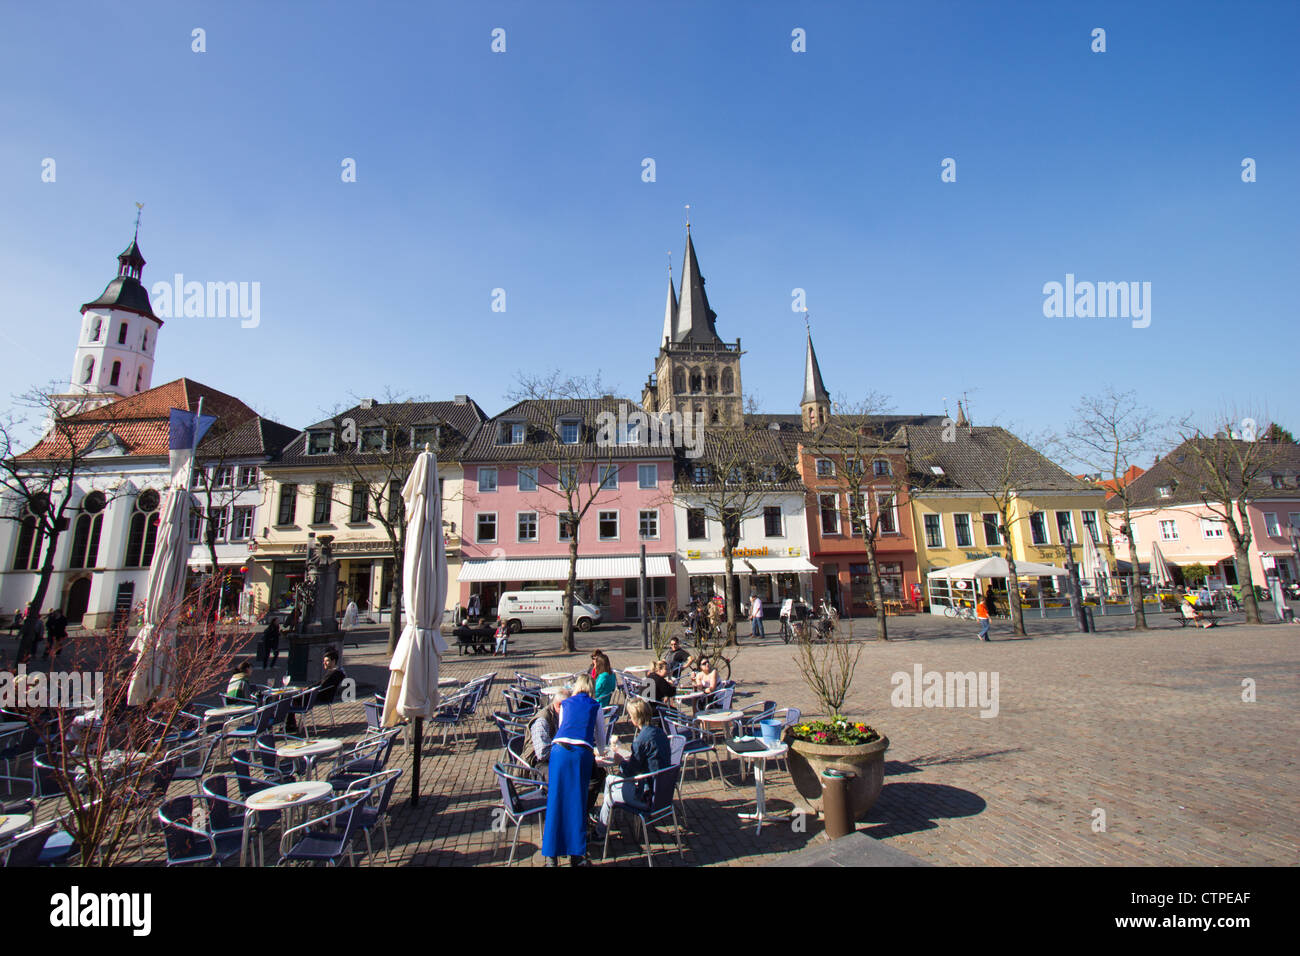 Square dans la ville historique de Xanten, Allemagne Banque D'Images